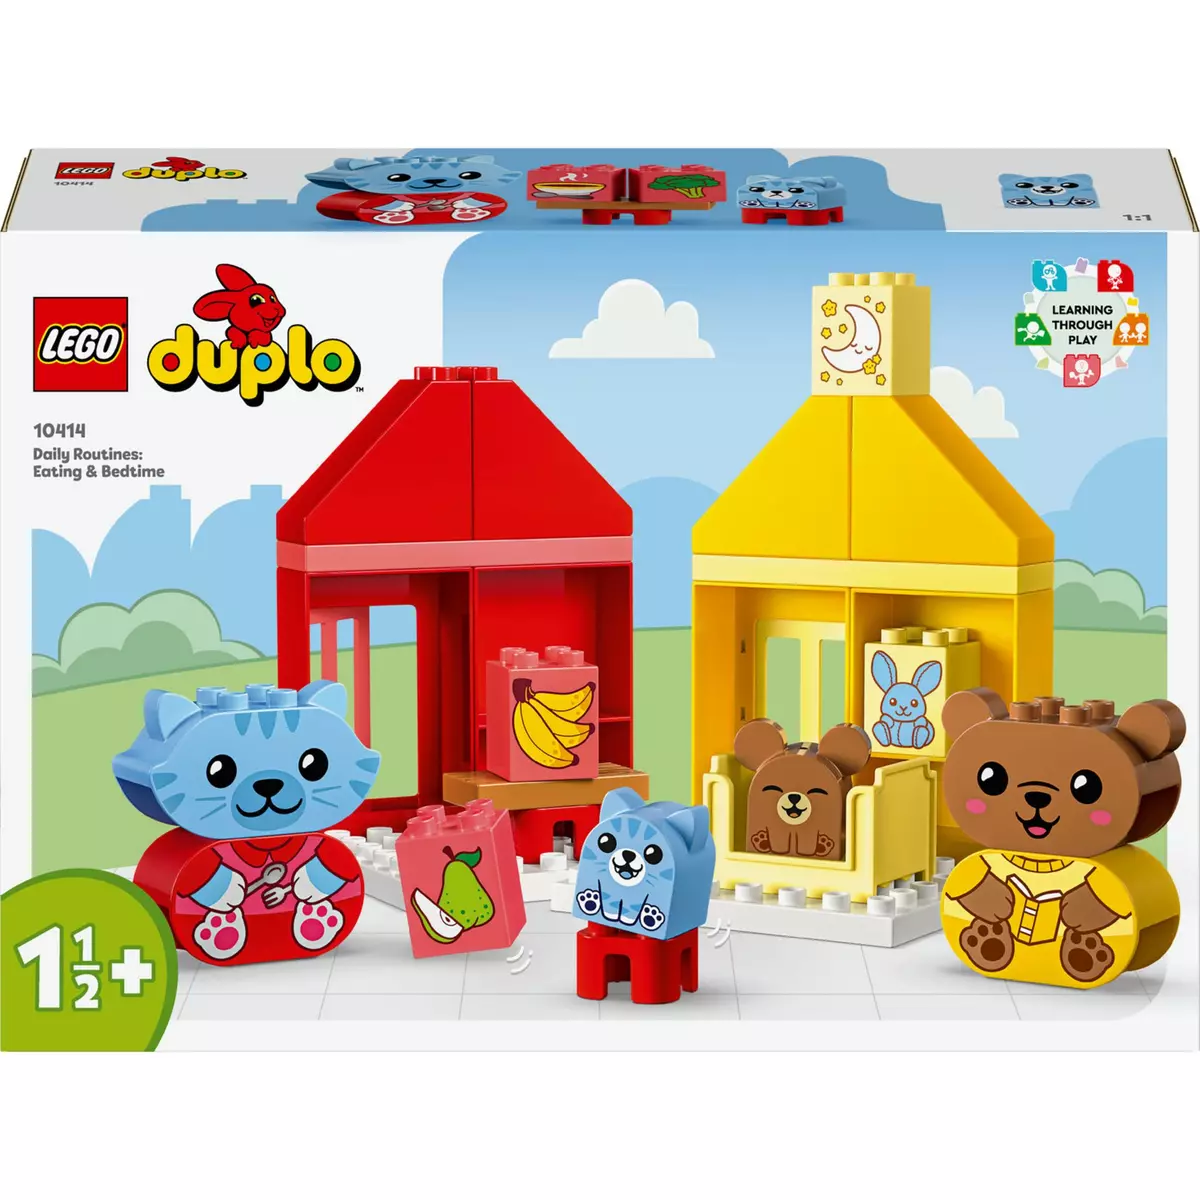 LEGO DUPLO 10993 - La cabane dans l’arbre 3-en-1, Jouet Éducatif pour  Enfants Dès 3 Ans, Filles et Garçons, avec 4 Figurines Animaux, des Briques  et Toboggan pas cher 